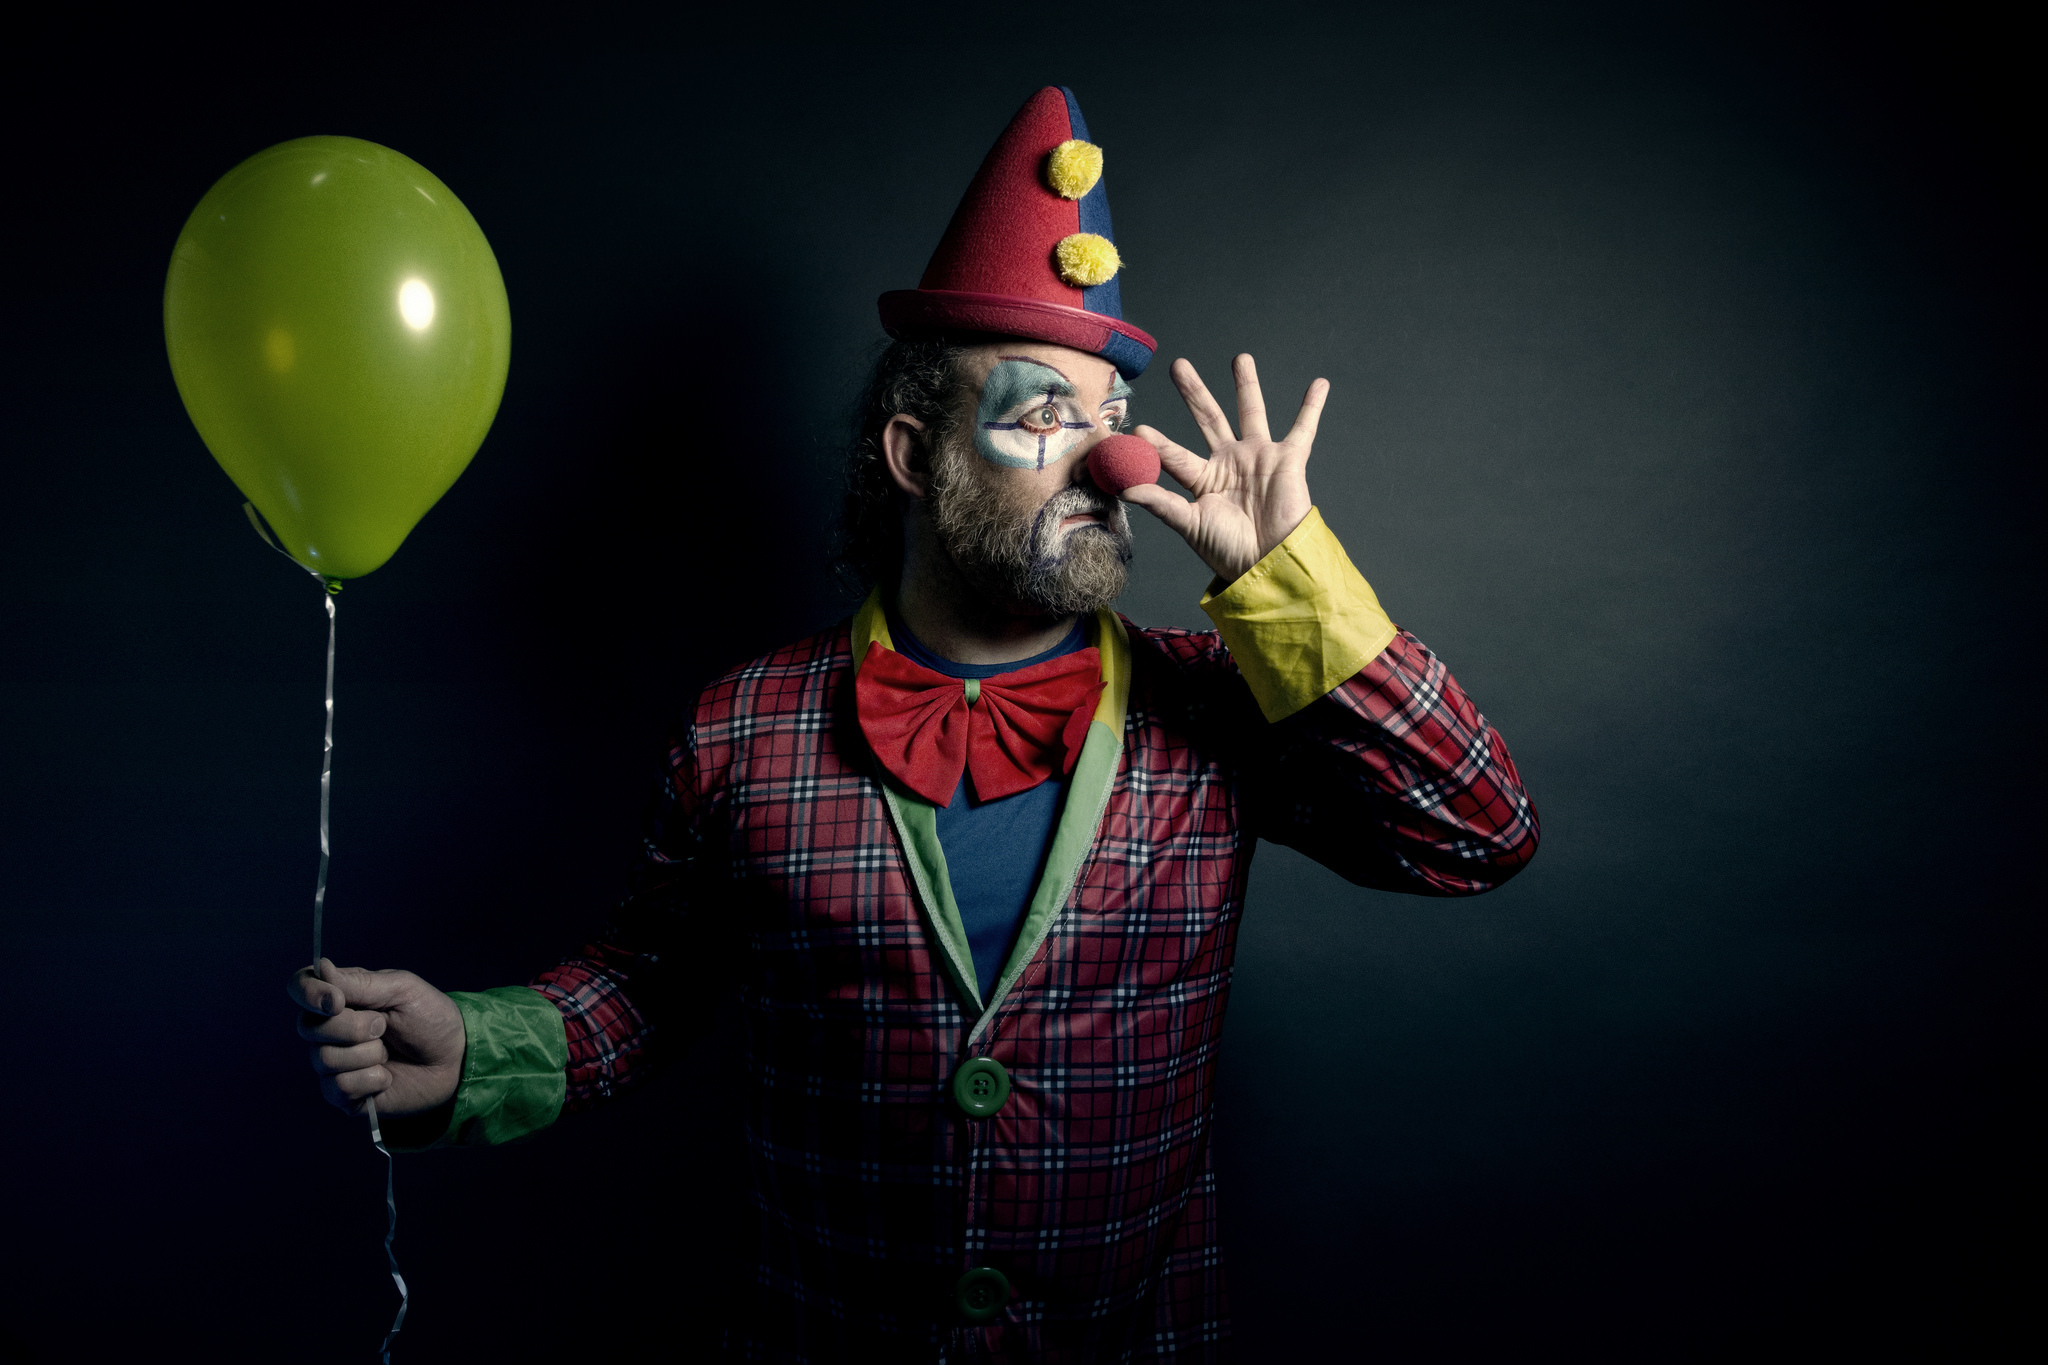 Сайт клоуна. Клоун. Смешной клоун. Фото клоуна. Весёлые клоуны.